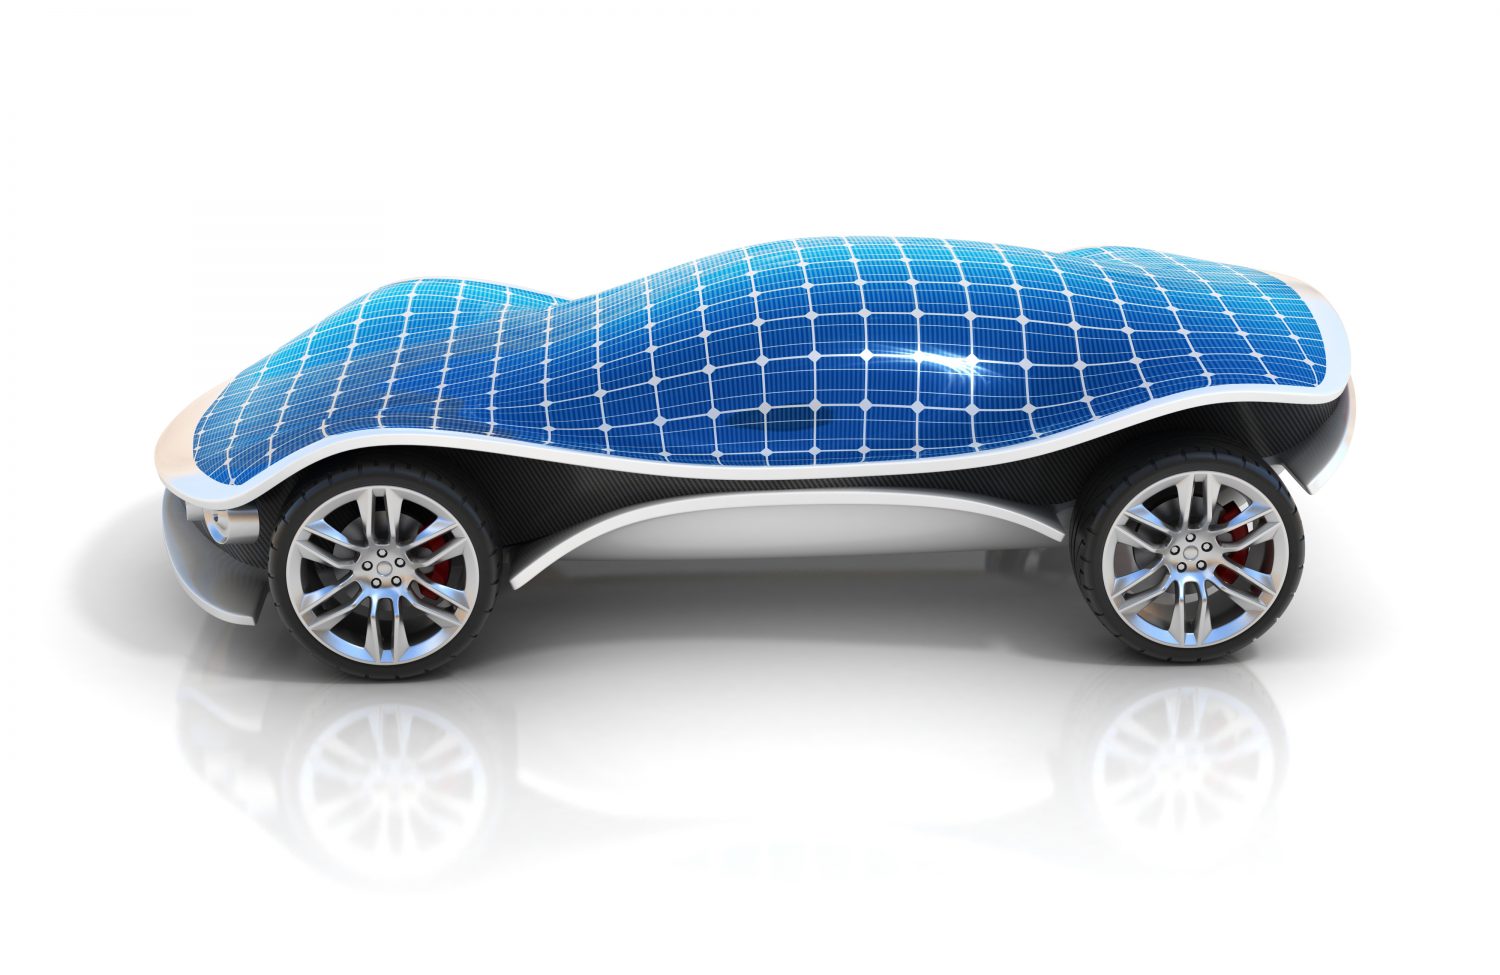 concept solar car Fuel Freedom Foundation